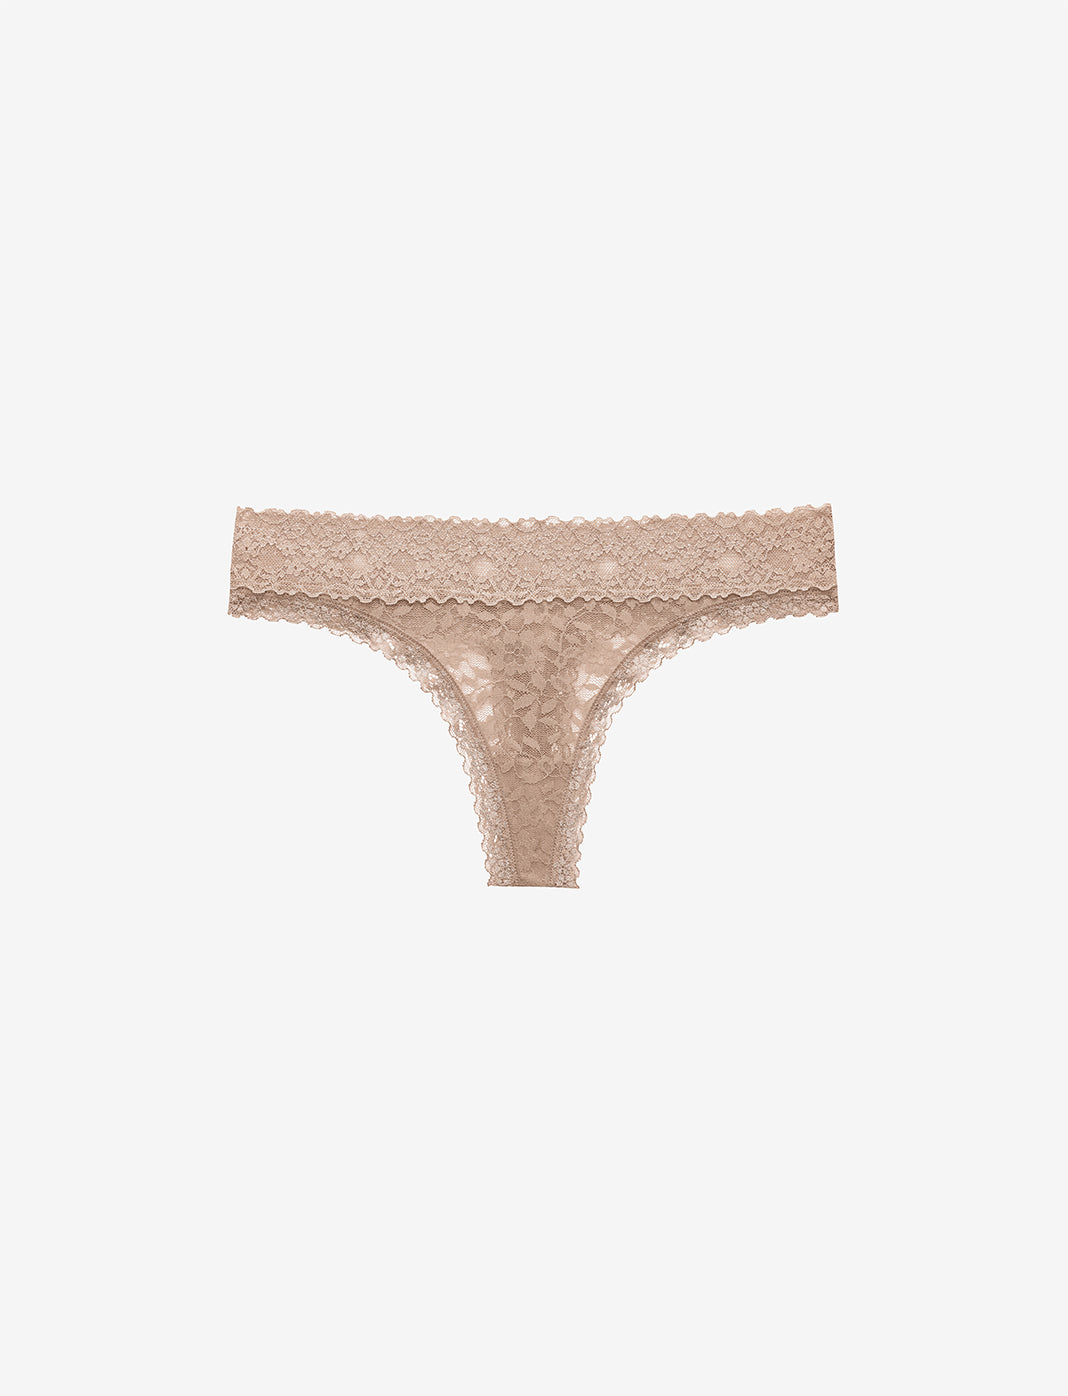 Lace Bra & Underwear Sets - Sexy Lace Lingerie Sets | ThirdLove